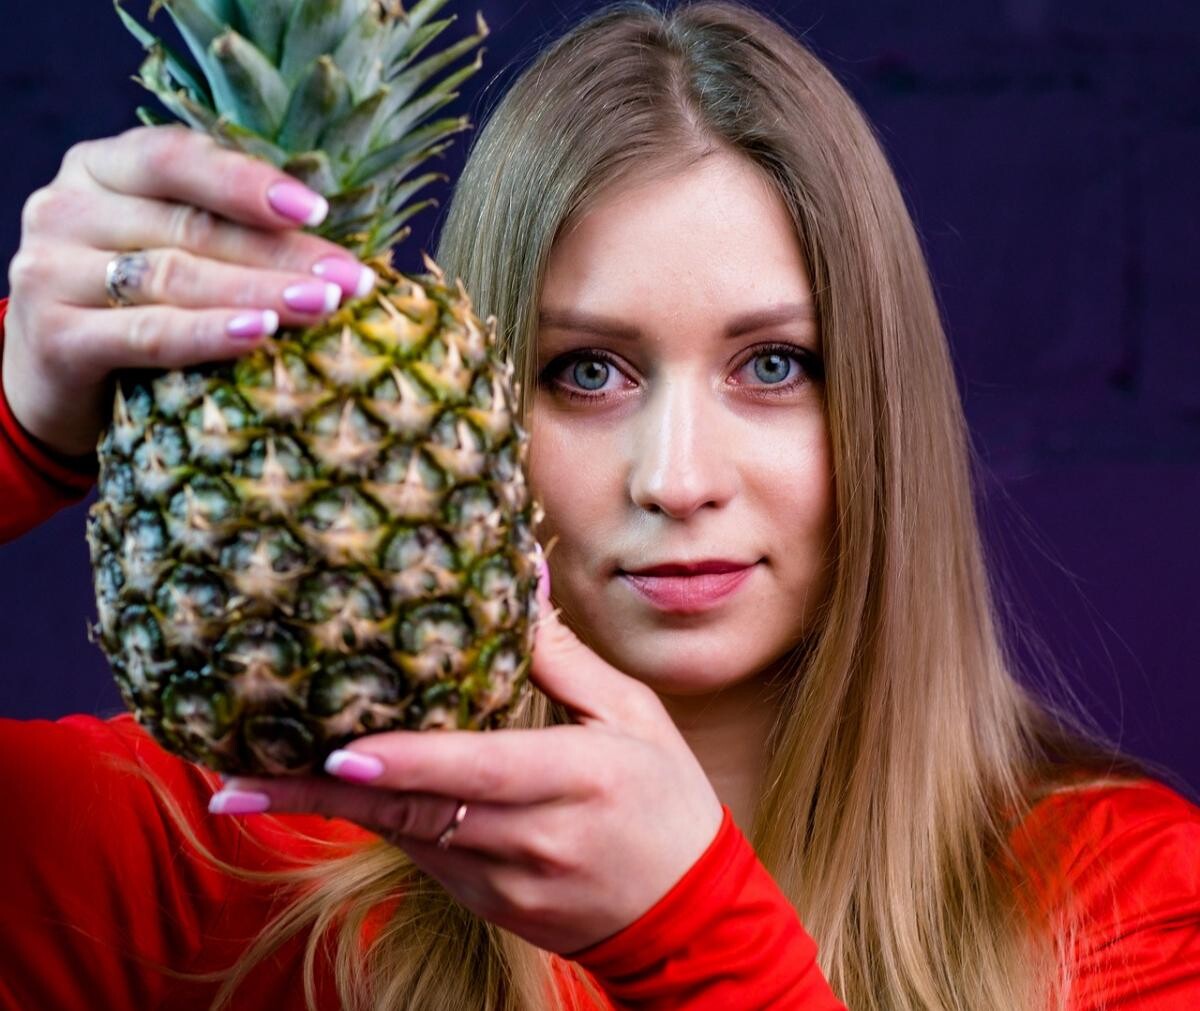 Dieta cu ananas te ajută să topeşti 500 de grame pe zi. Iată cum!